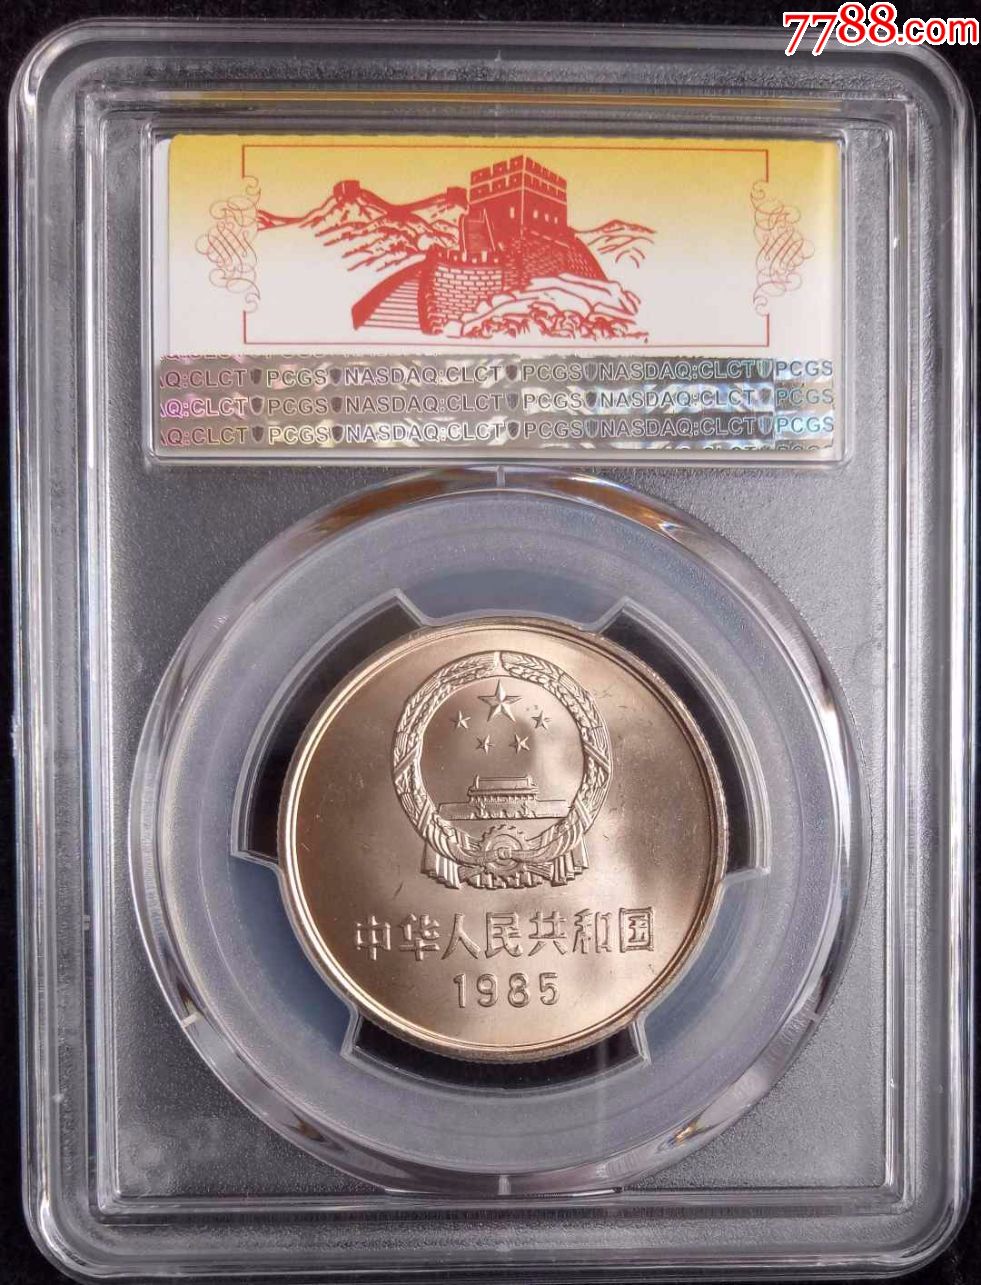 1985年pcgs评级长城币1元,正品pcgs评级1985长城币一枚